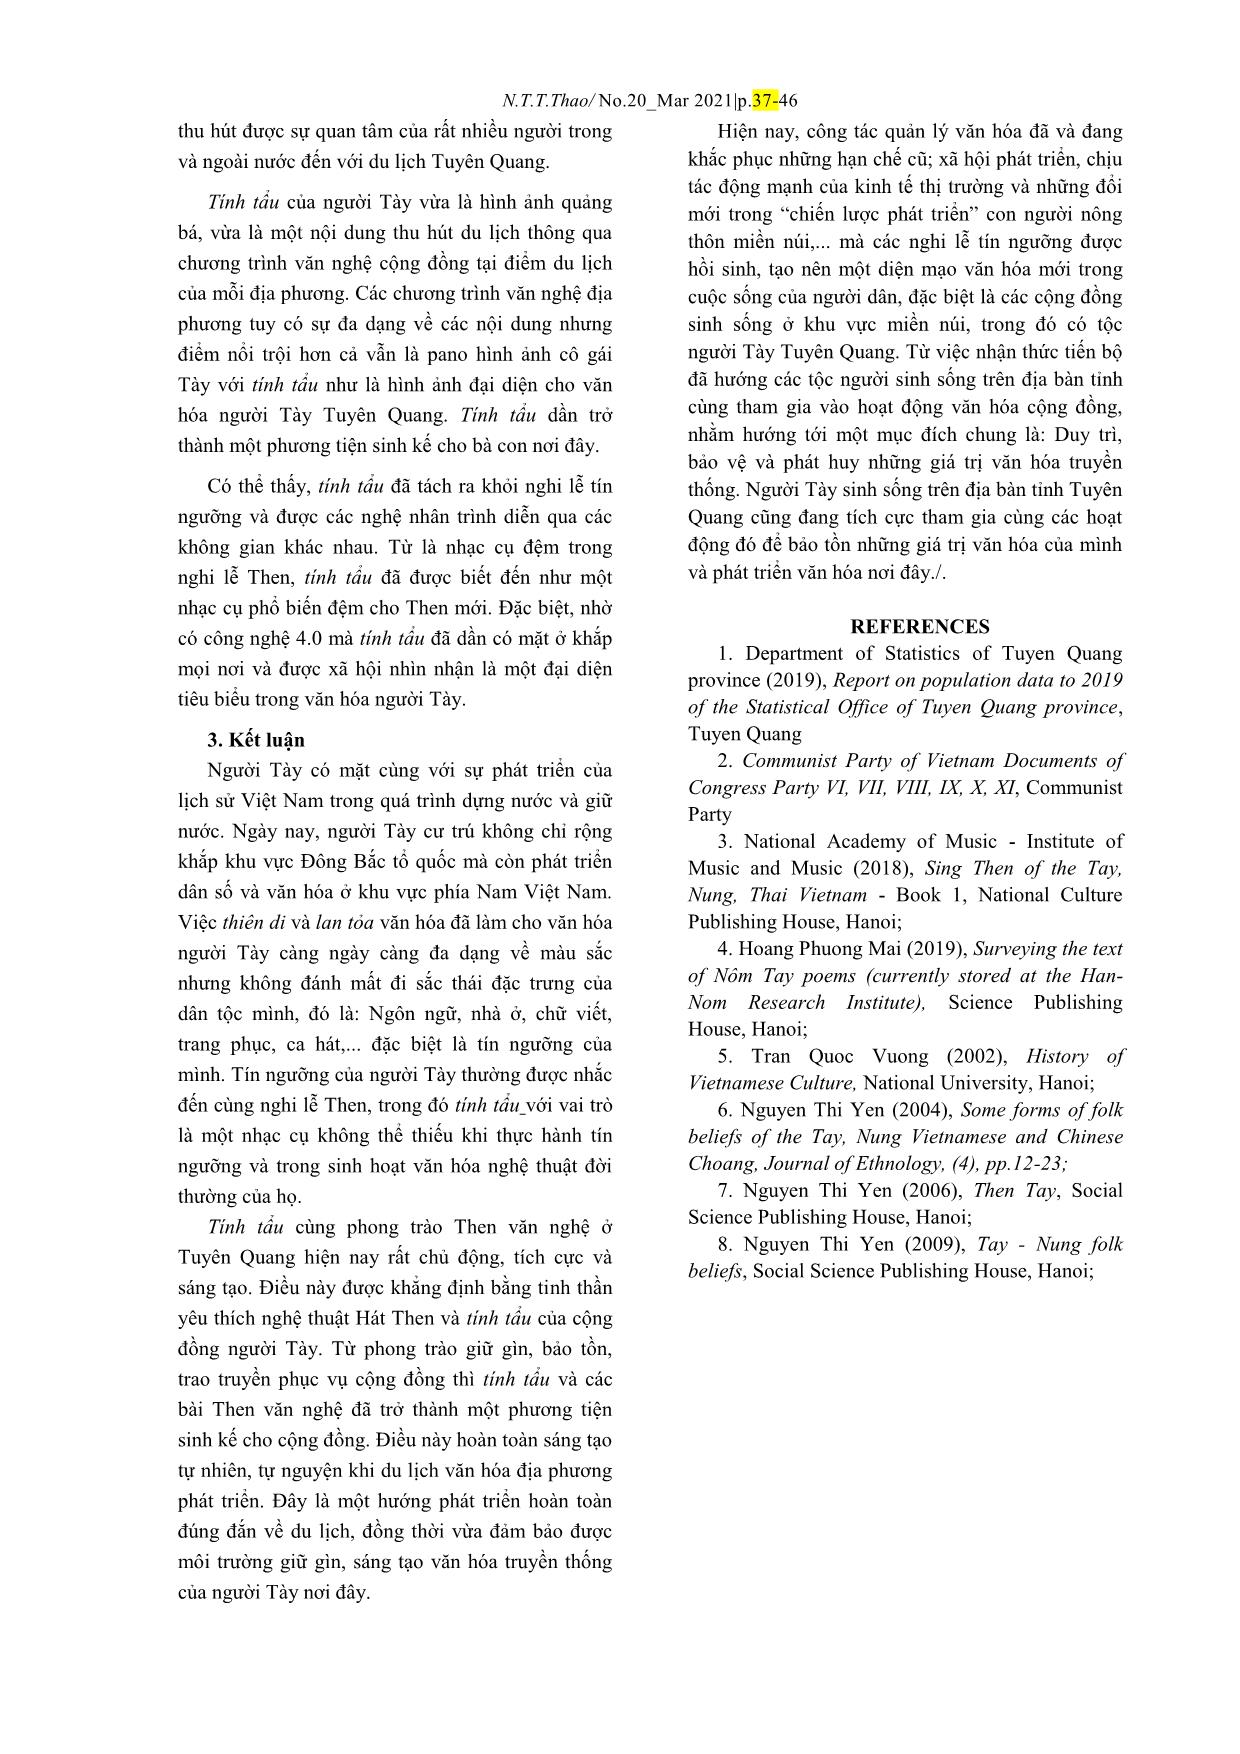 Đôi nét về tính tẩu của người Tày Tuyên Quang trang 10